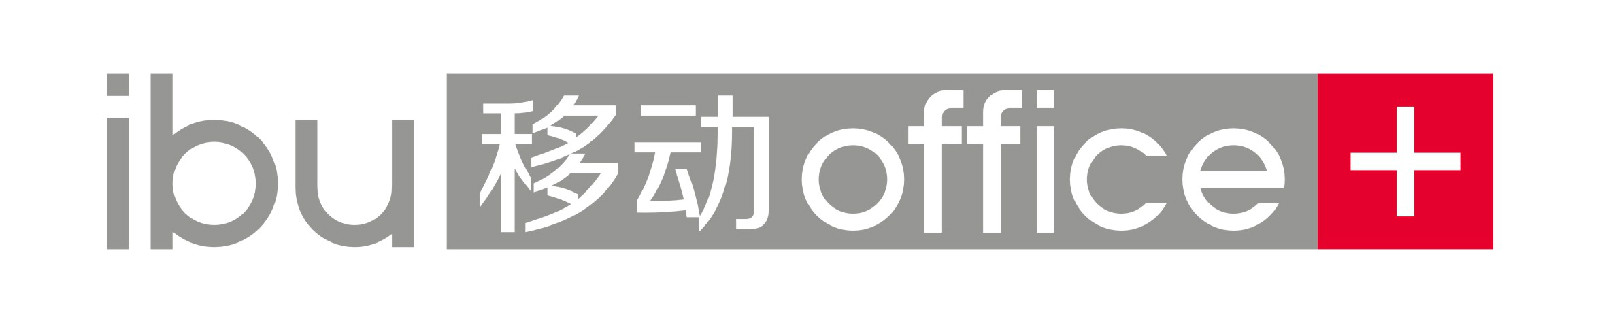 移動office+ logo